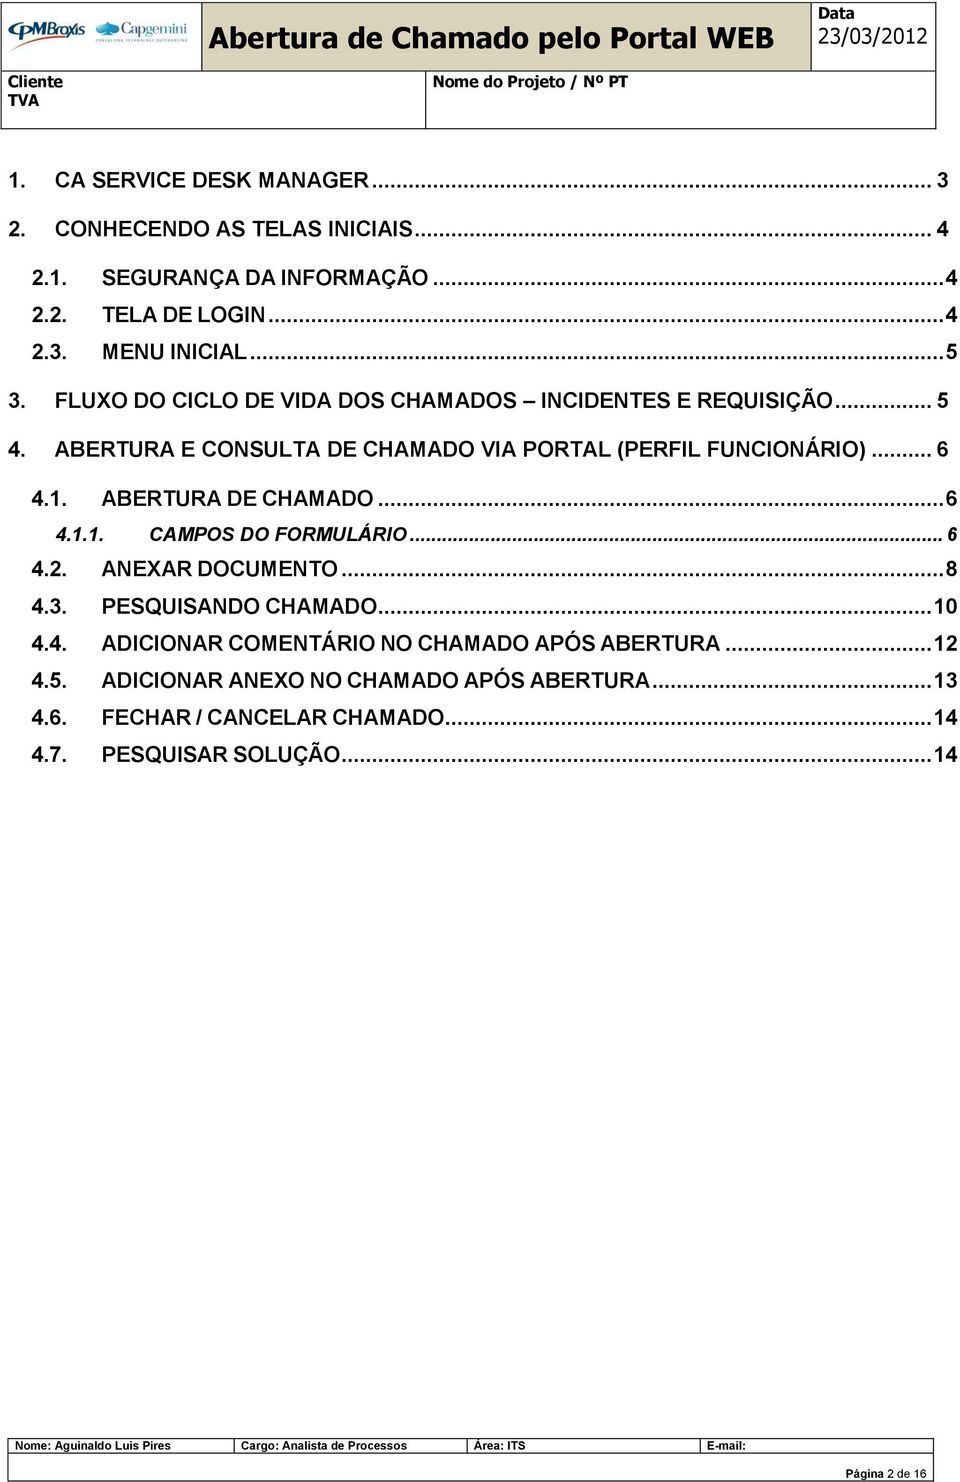 ABERTURA DE CHAMADO... 6 4.1.1. CAMPOS DO FORMULÁRIO... 6 4.2. ANEXAR DOCUMENTO... 8 4.3. PESQUISANDO CHAMADO... 10 4.4. ADICIONAR COMENTÁRIO NO CHAMADO APÓS ABERTURA.